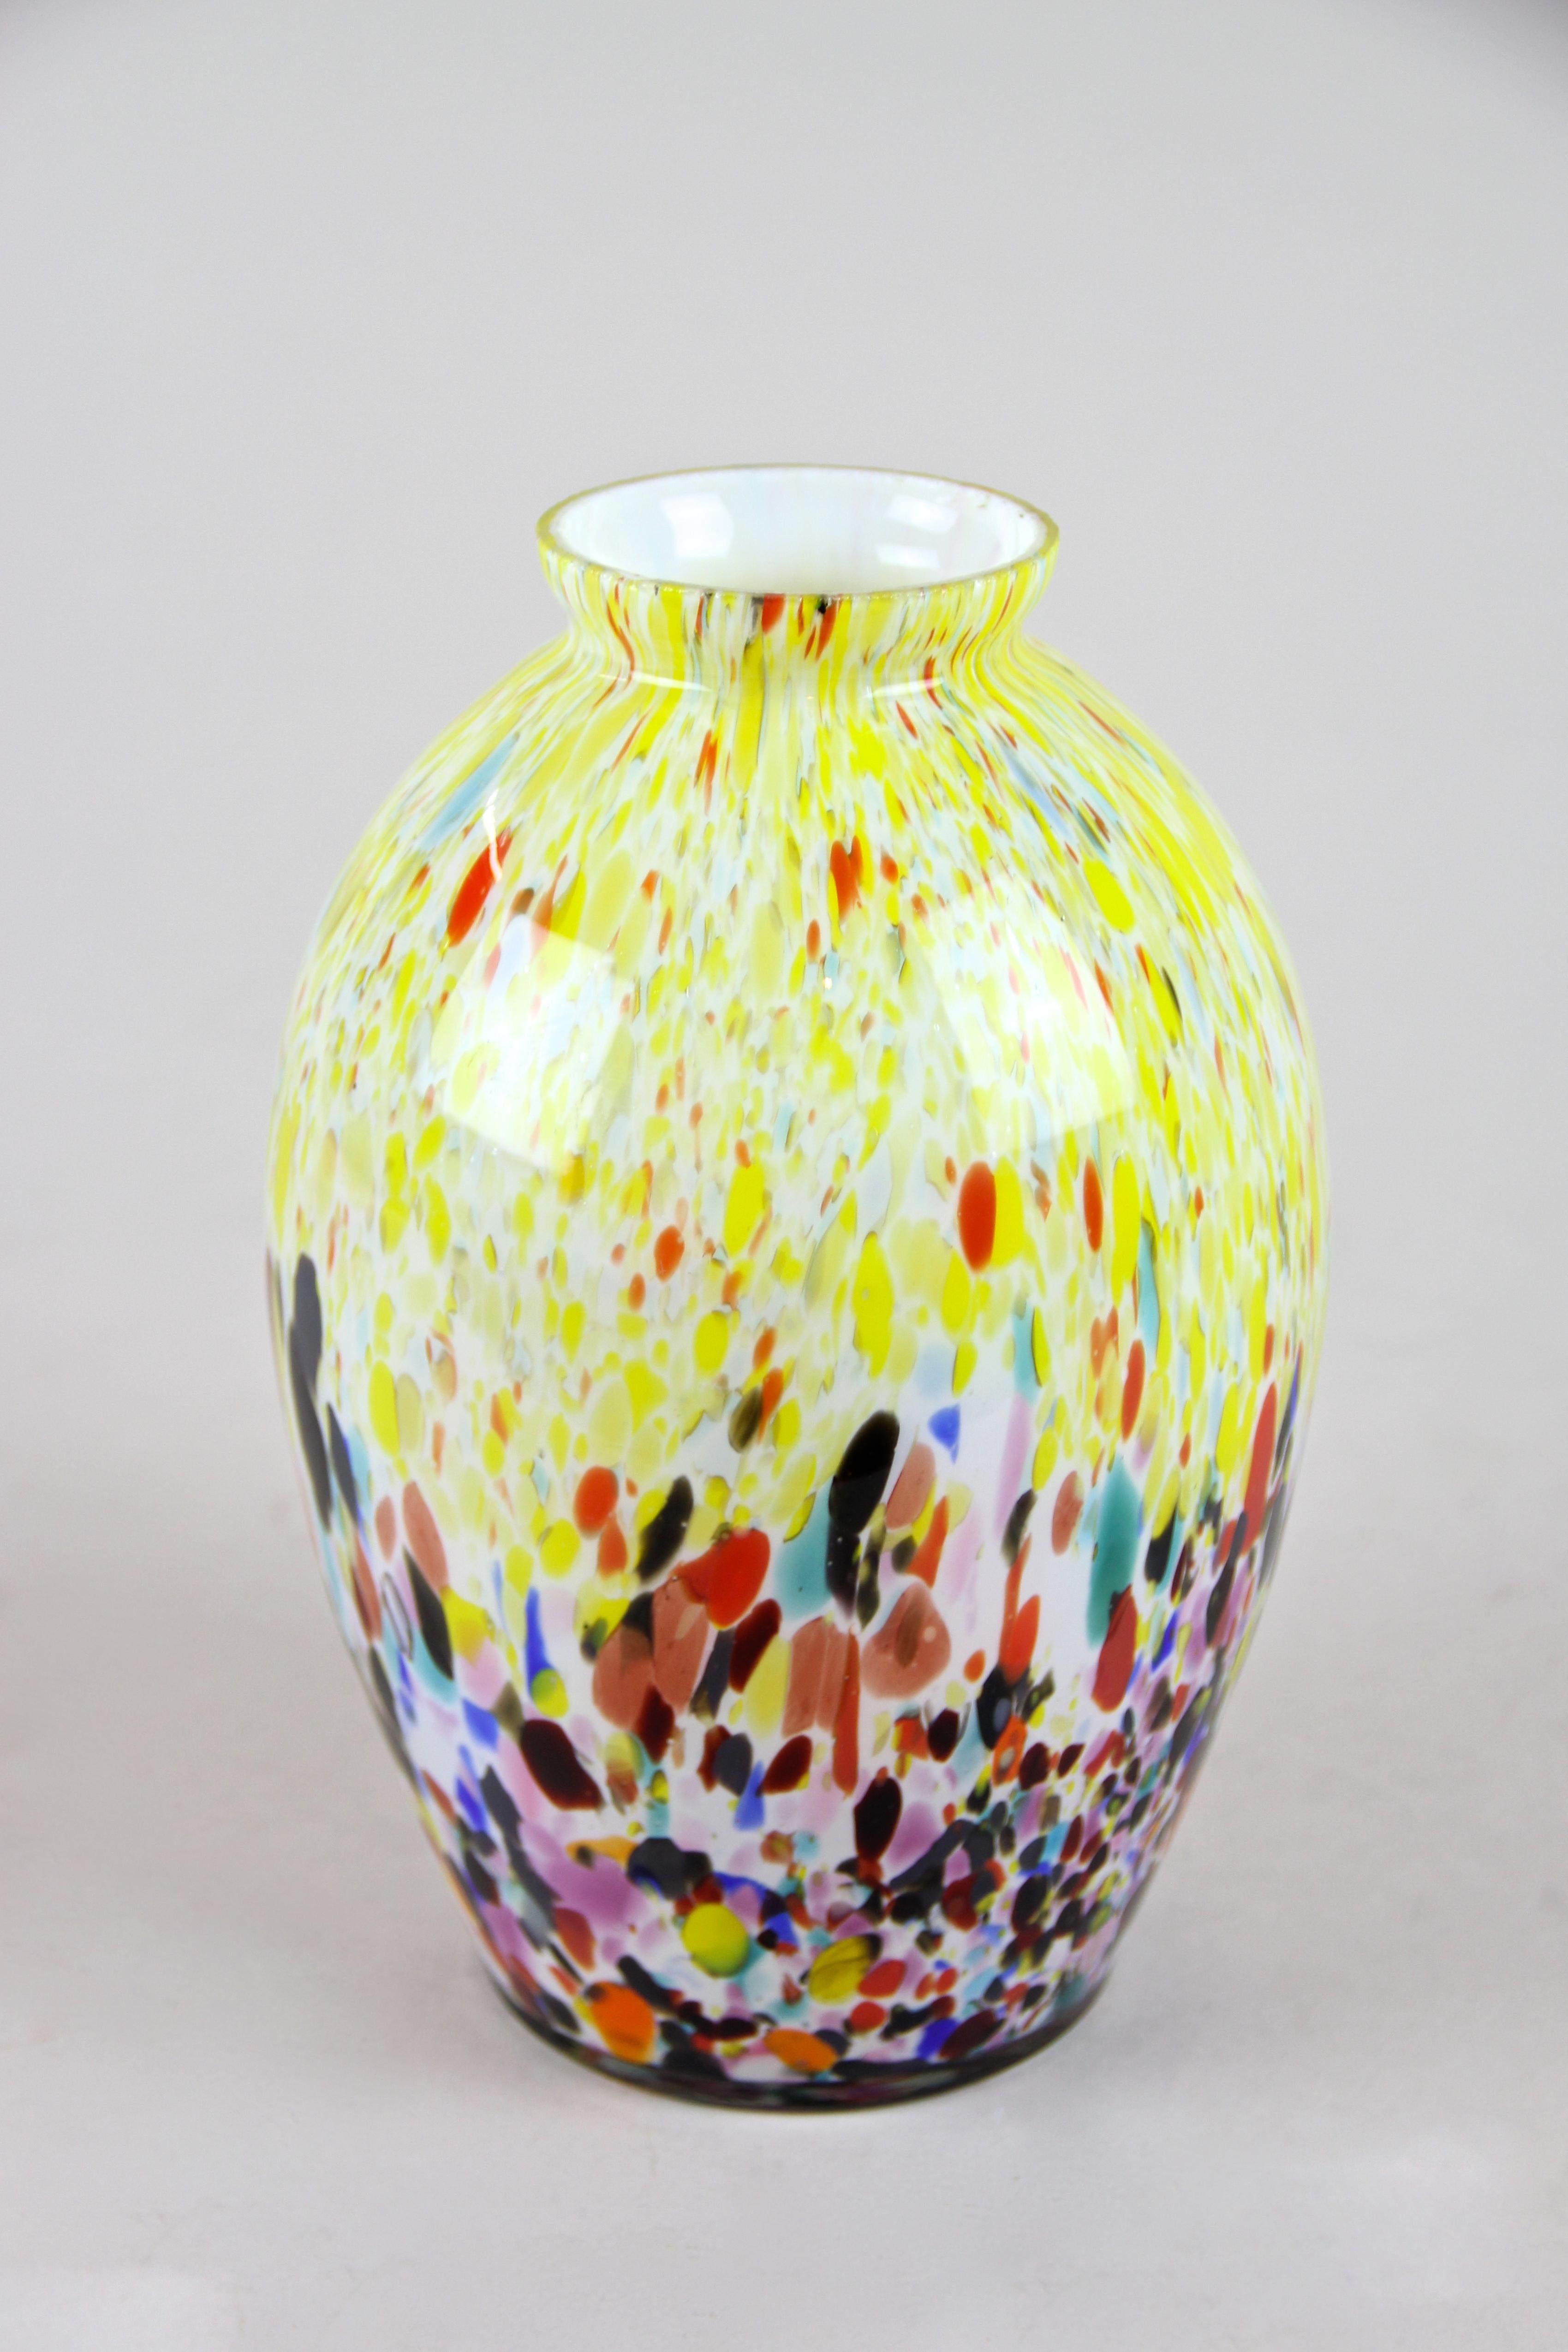 Magnifique vase multicolore en verre de Murano datant du milieu du siècle dernier, vers 1960. Ce vase en verre de forme bulbeuse présente un très beau design tacheté dans de nombreux tons de couleurs différents, allant du jaune, bleu, turquoise,